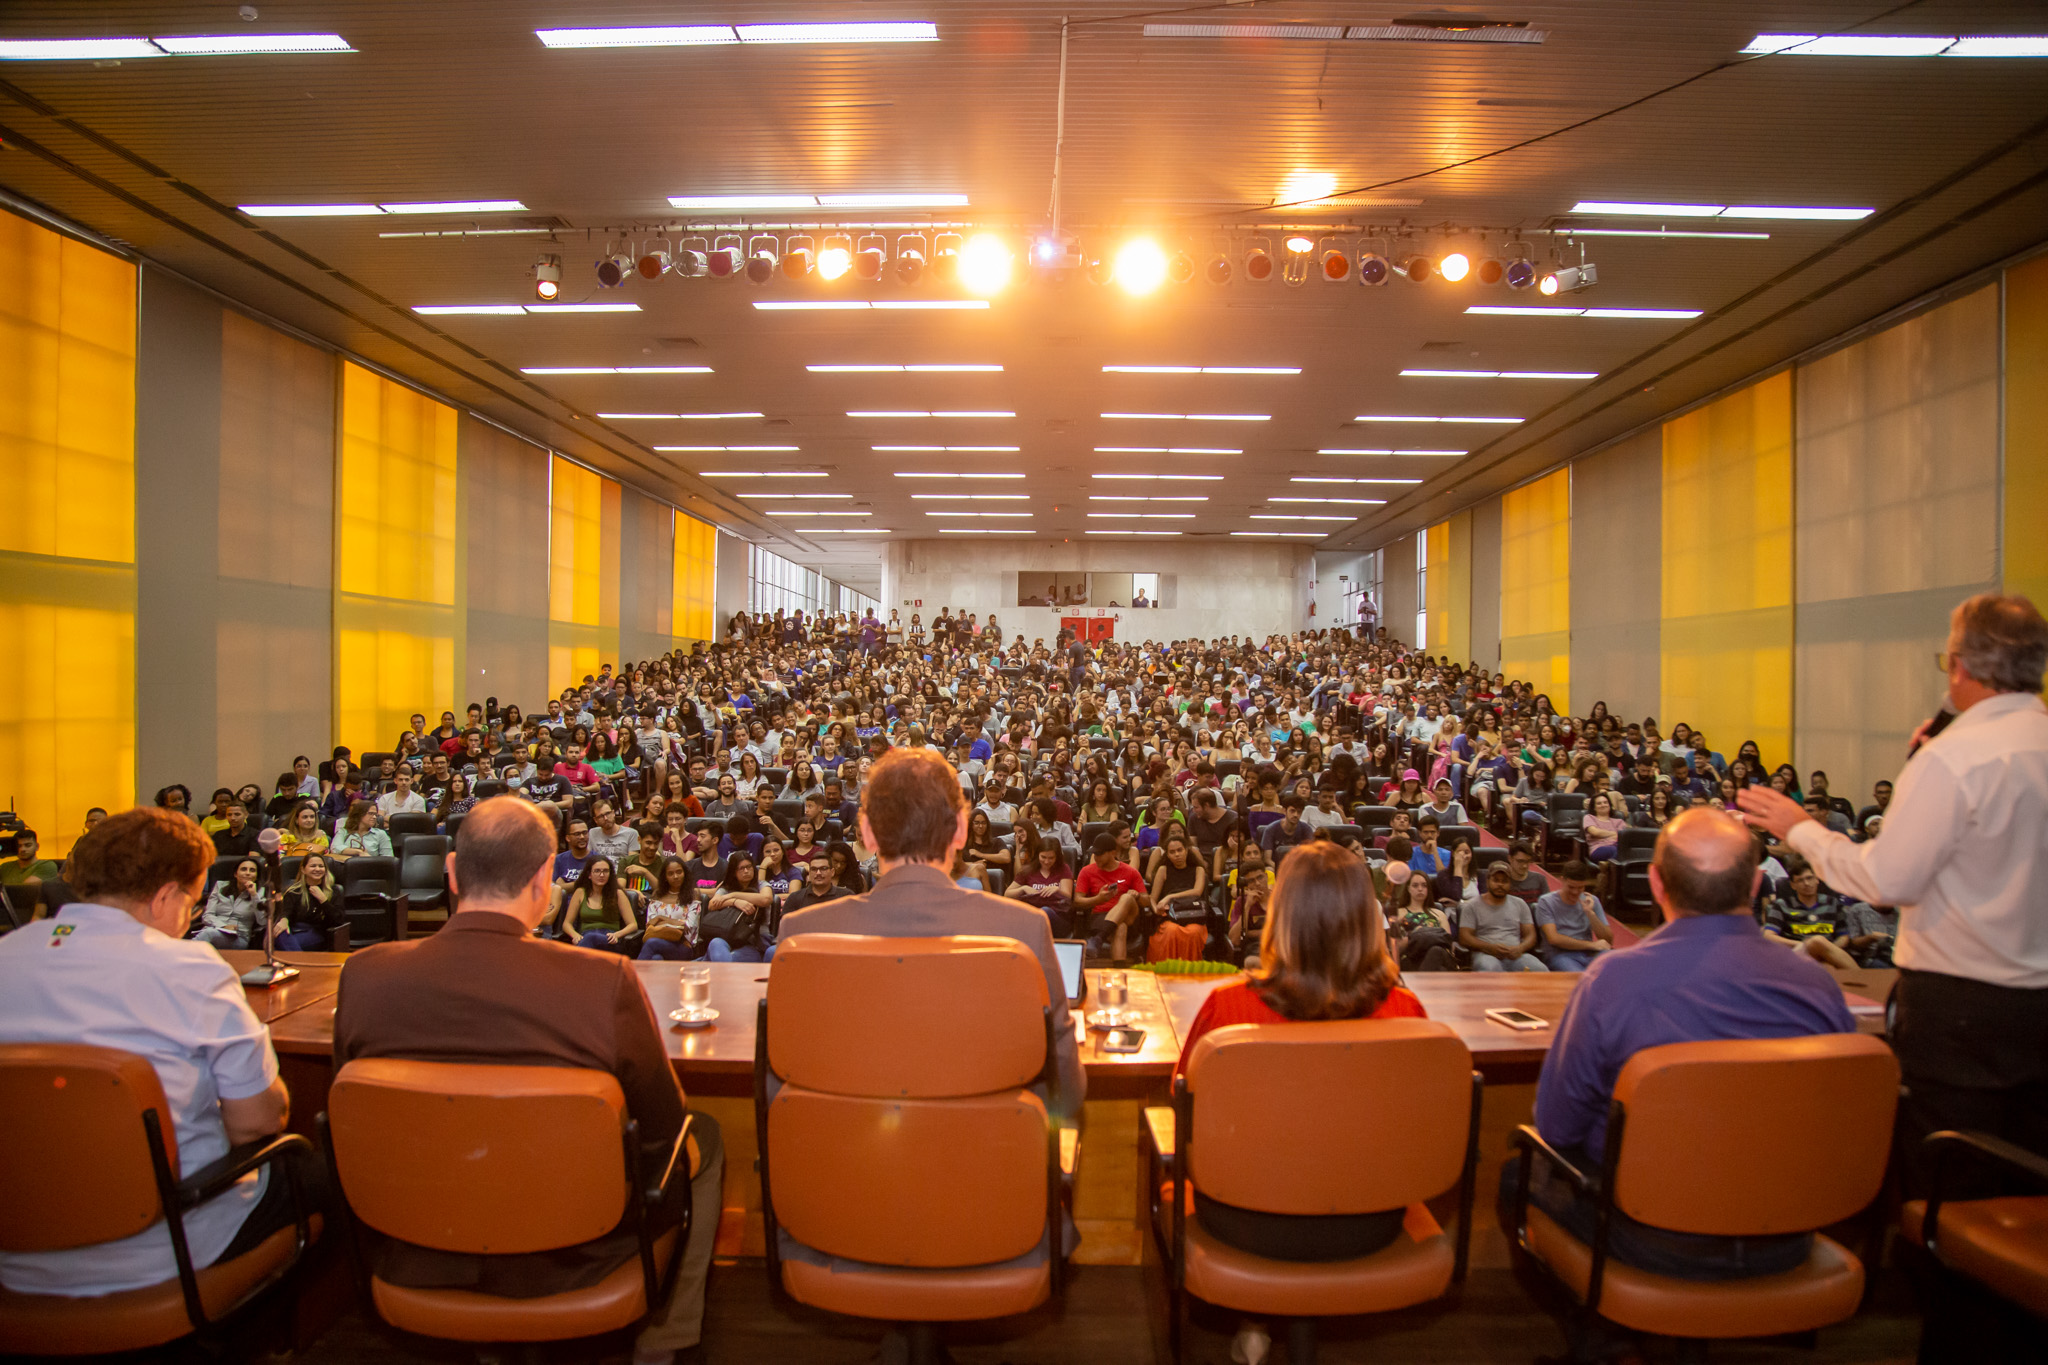 Foto tirada detrás do palco, mostrando a mesa de abertura e o auditório lotado. Alguns estudantes estão de pé ao fundo. 